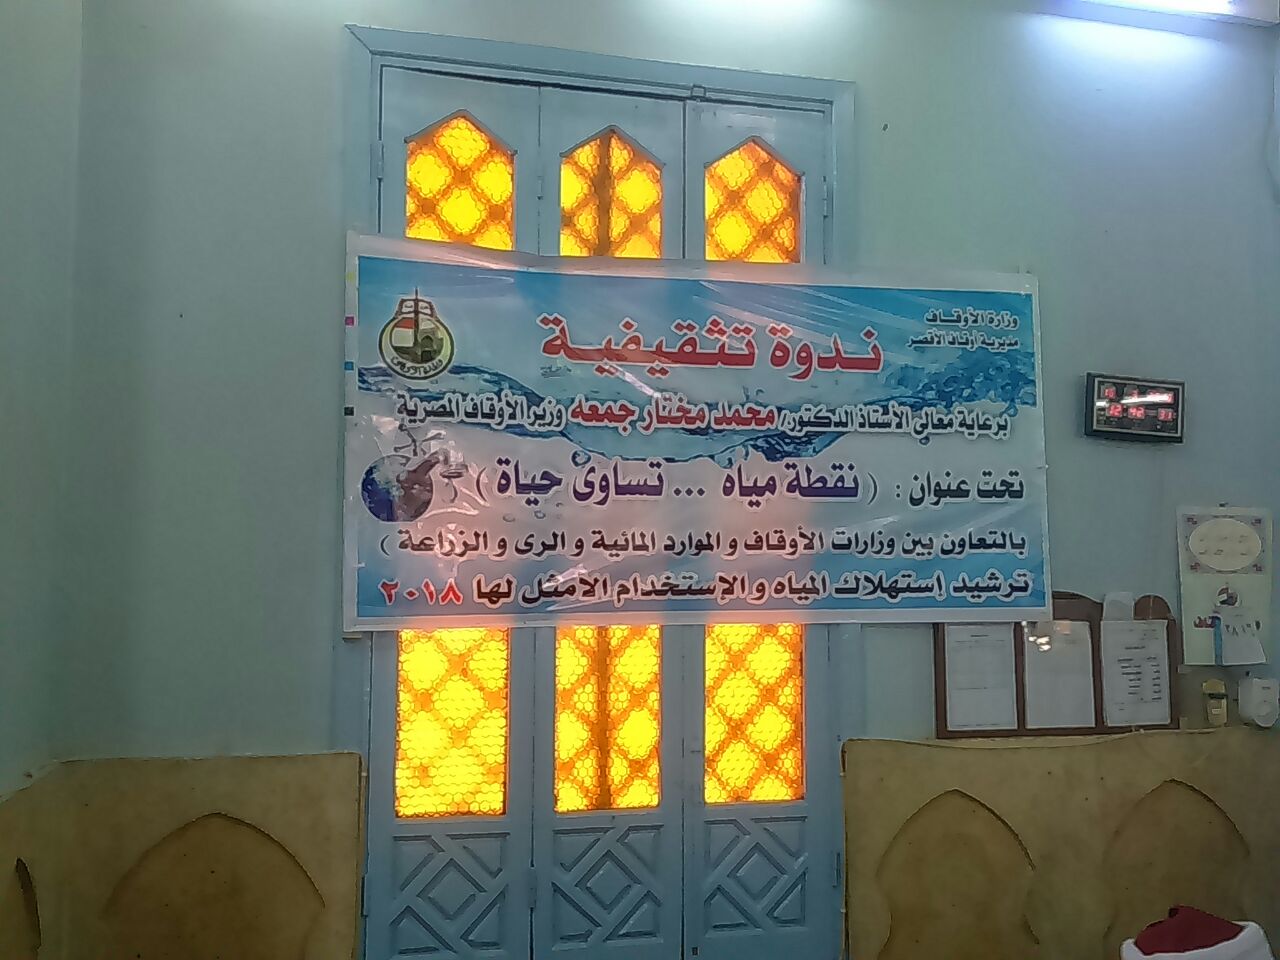  جانب من فعاليات تنظيم الندوة بمسجد السيد يوسف بالكرنك